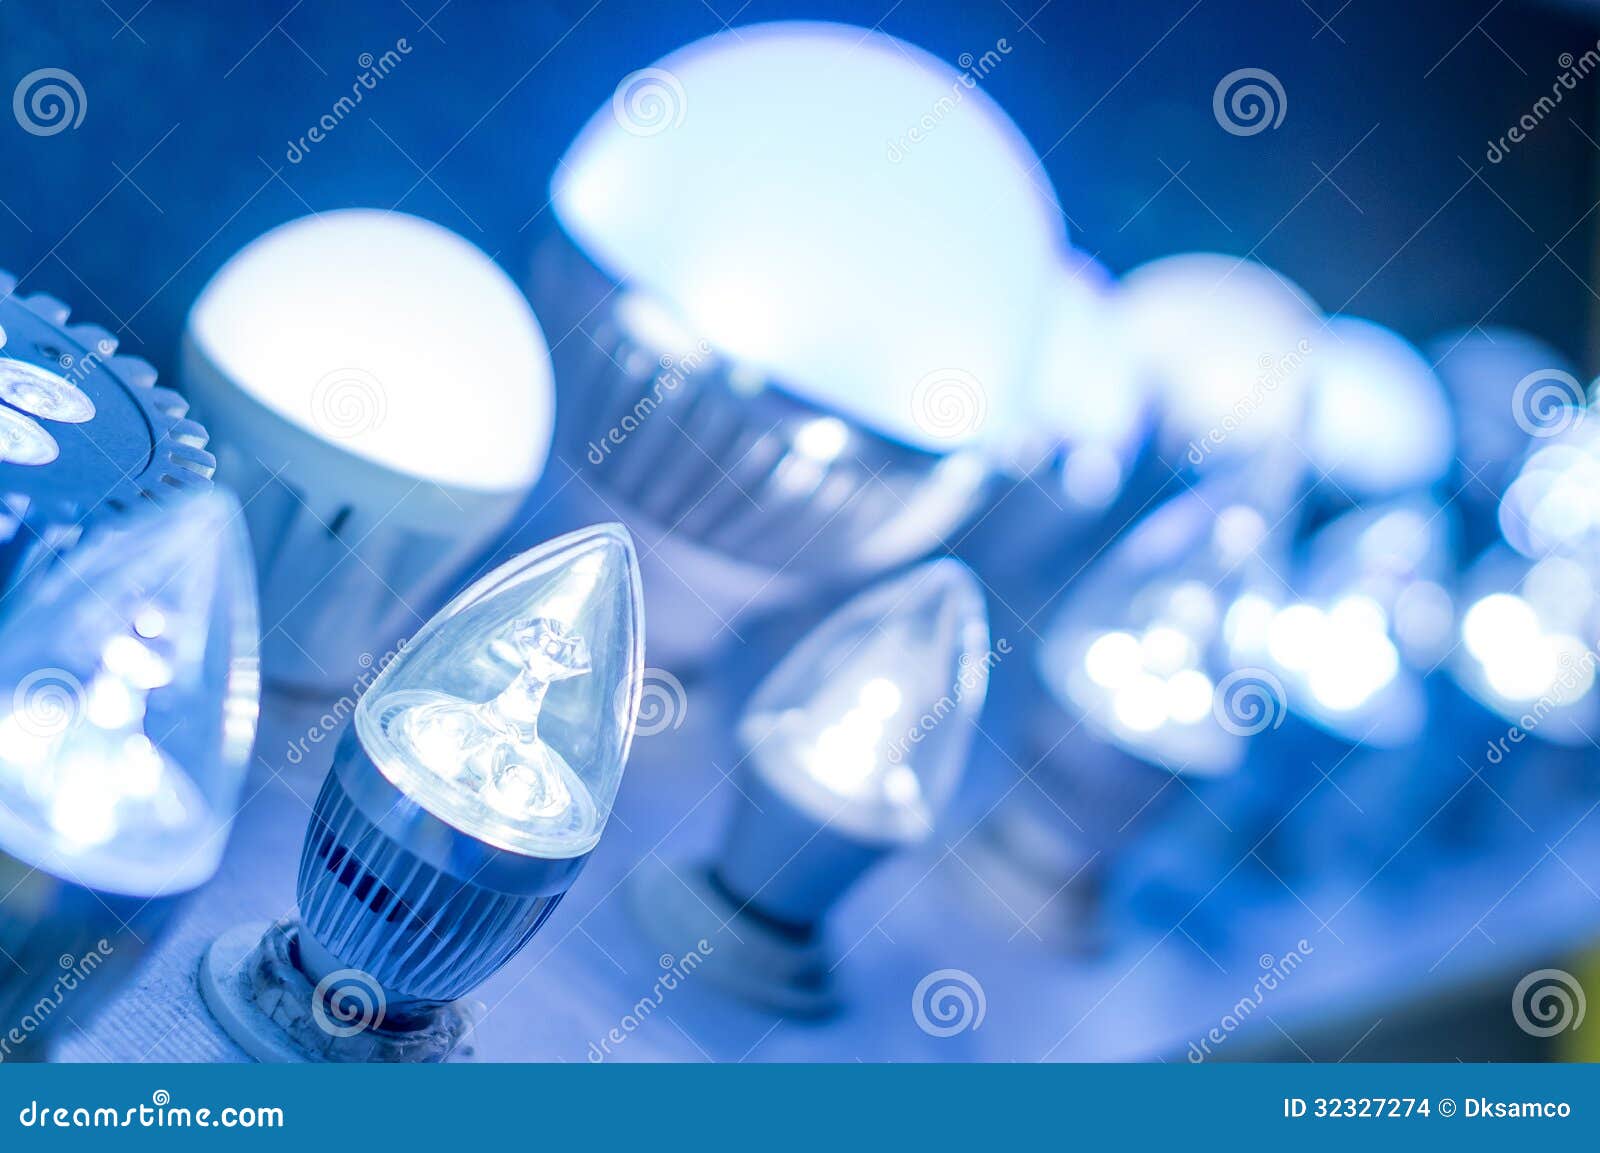 blue bright brightly bulb led